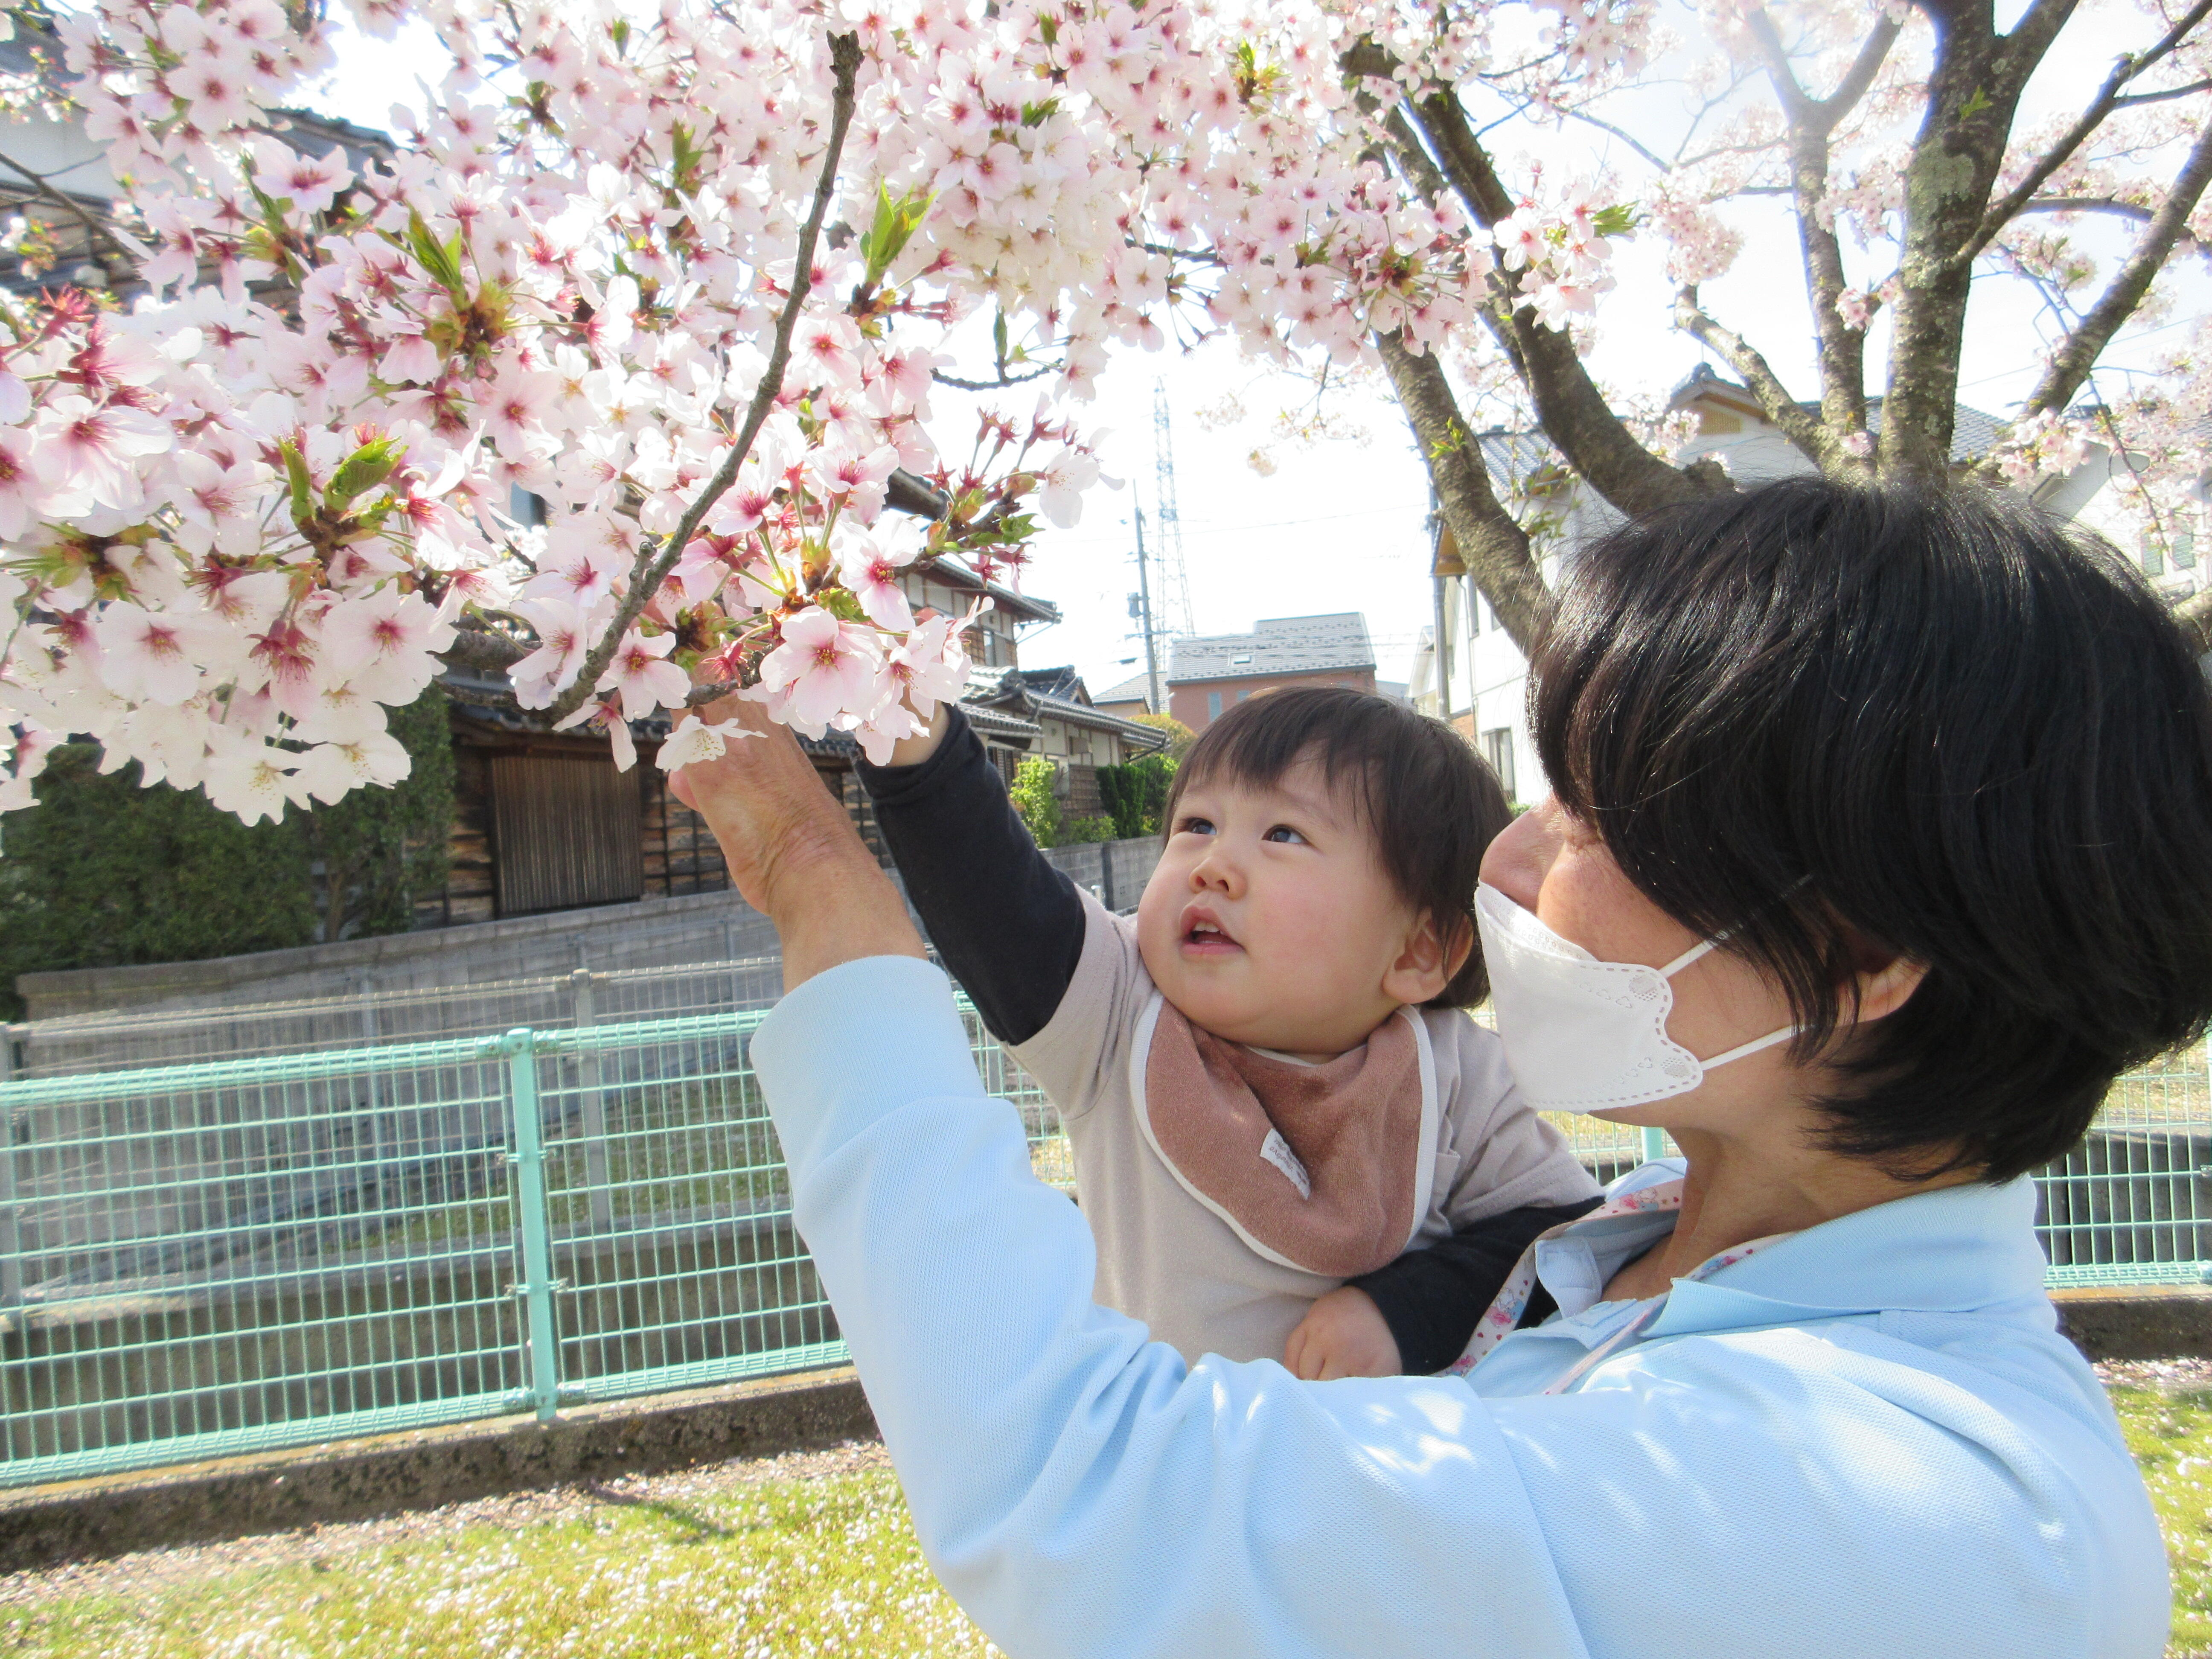 保育者に抱っこしてもらって、桜に手を伸ばすあひる組Ｈくん。いい笑顔♪